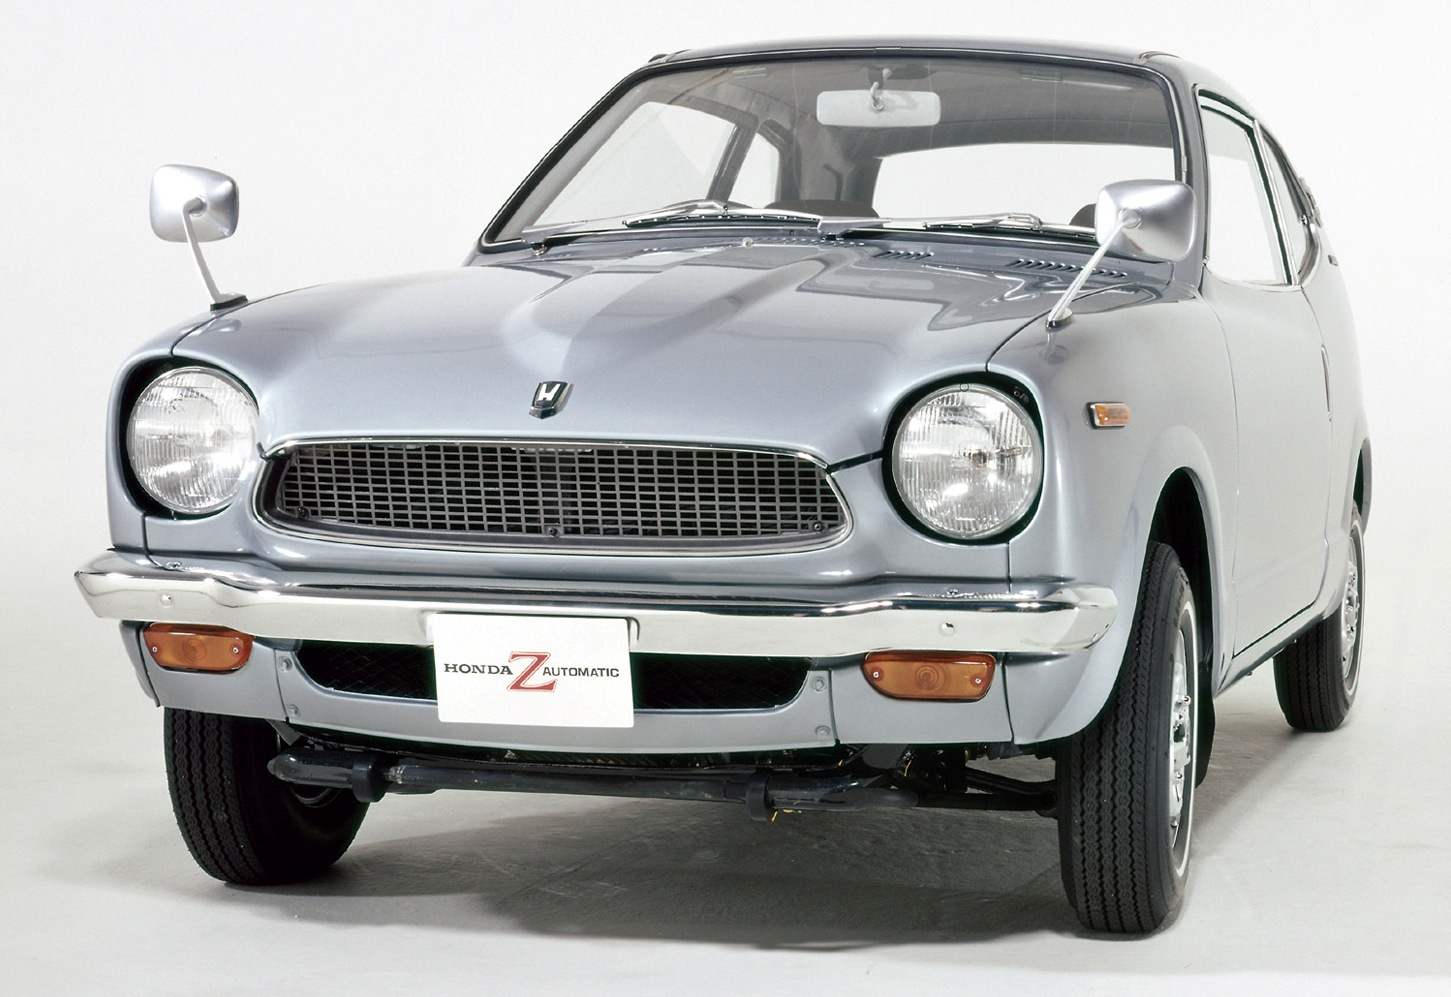 Мини-автомобиль Honda Z выпуска 1970 года с 2-цилиндровым мотором рабочим объемом 350 см3